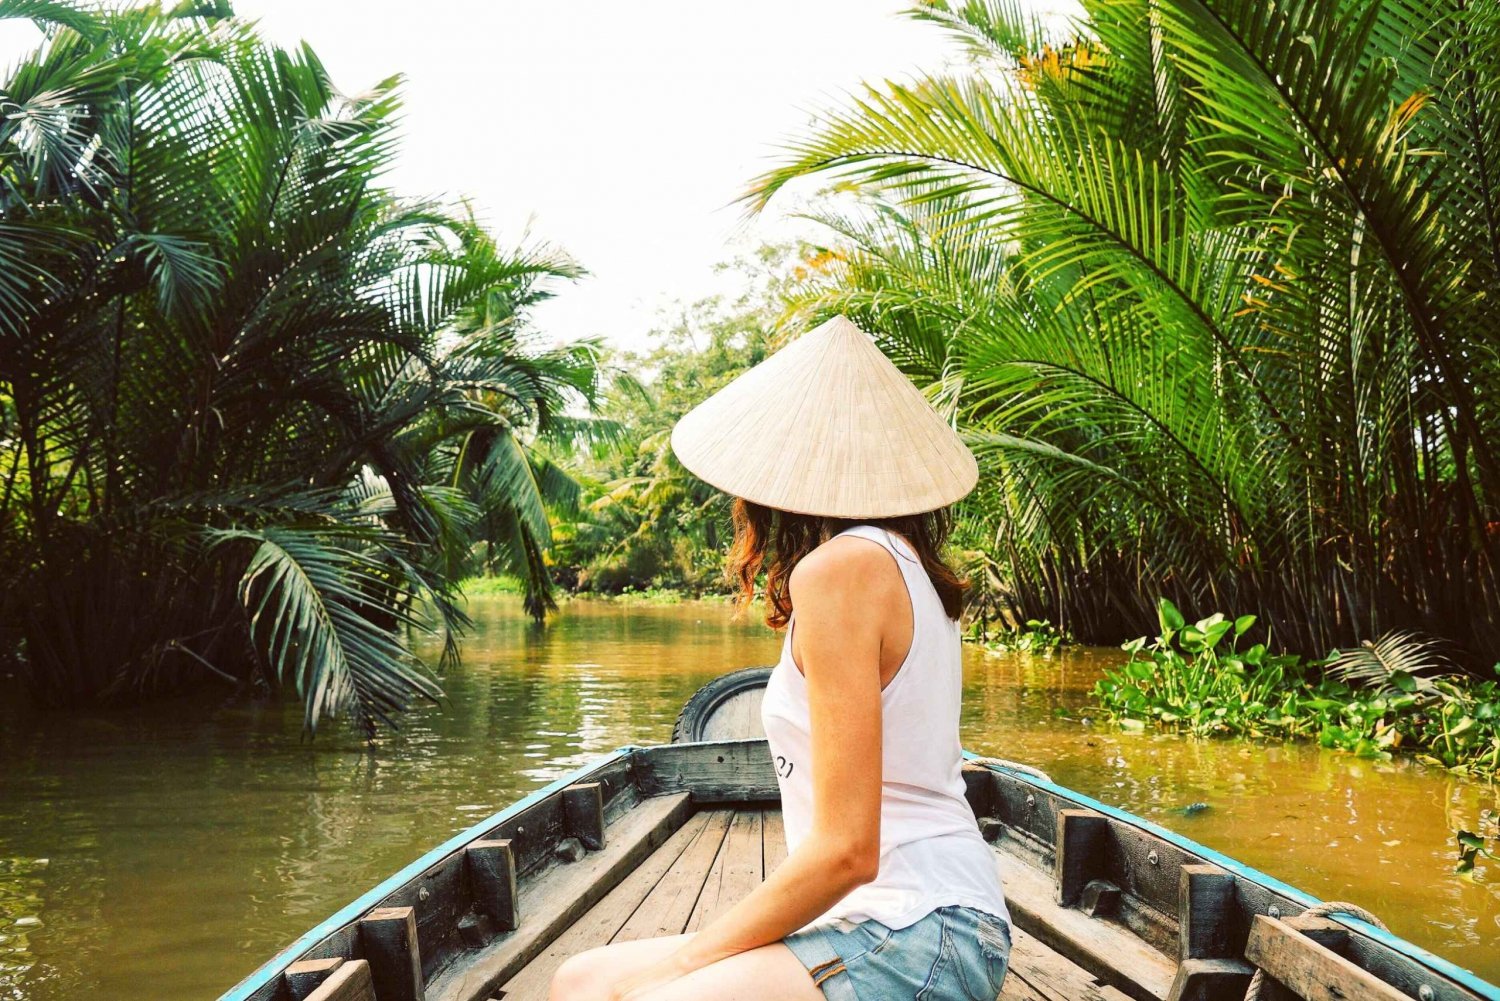 Mekongin suisto: Ben Tre: My Tho & Ben Tre kokopäiväretki pienessä ryhmässä